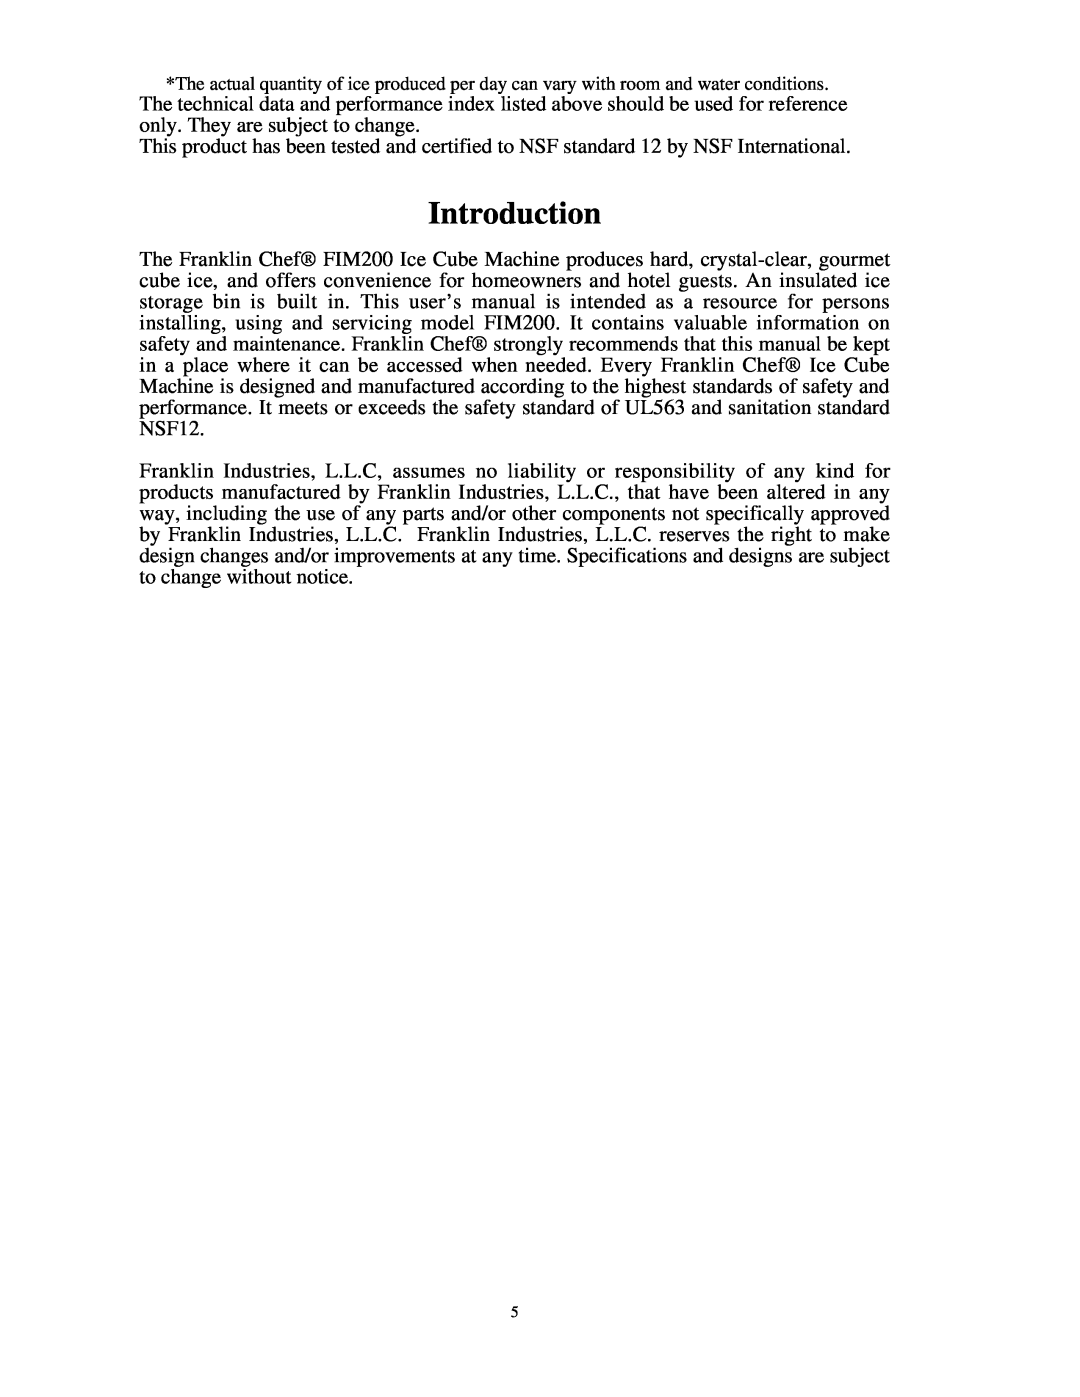 Franklin Industries, L.L.C FIM200 user manual Introduction 